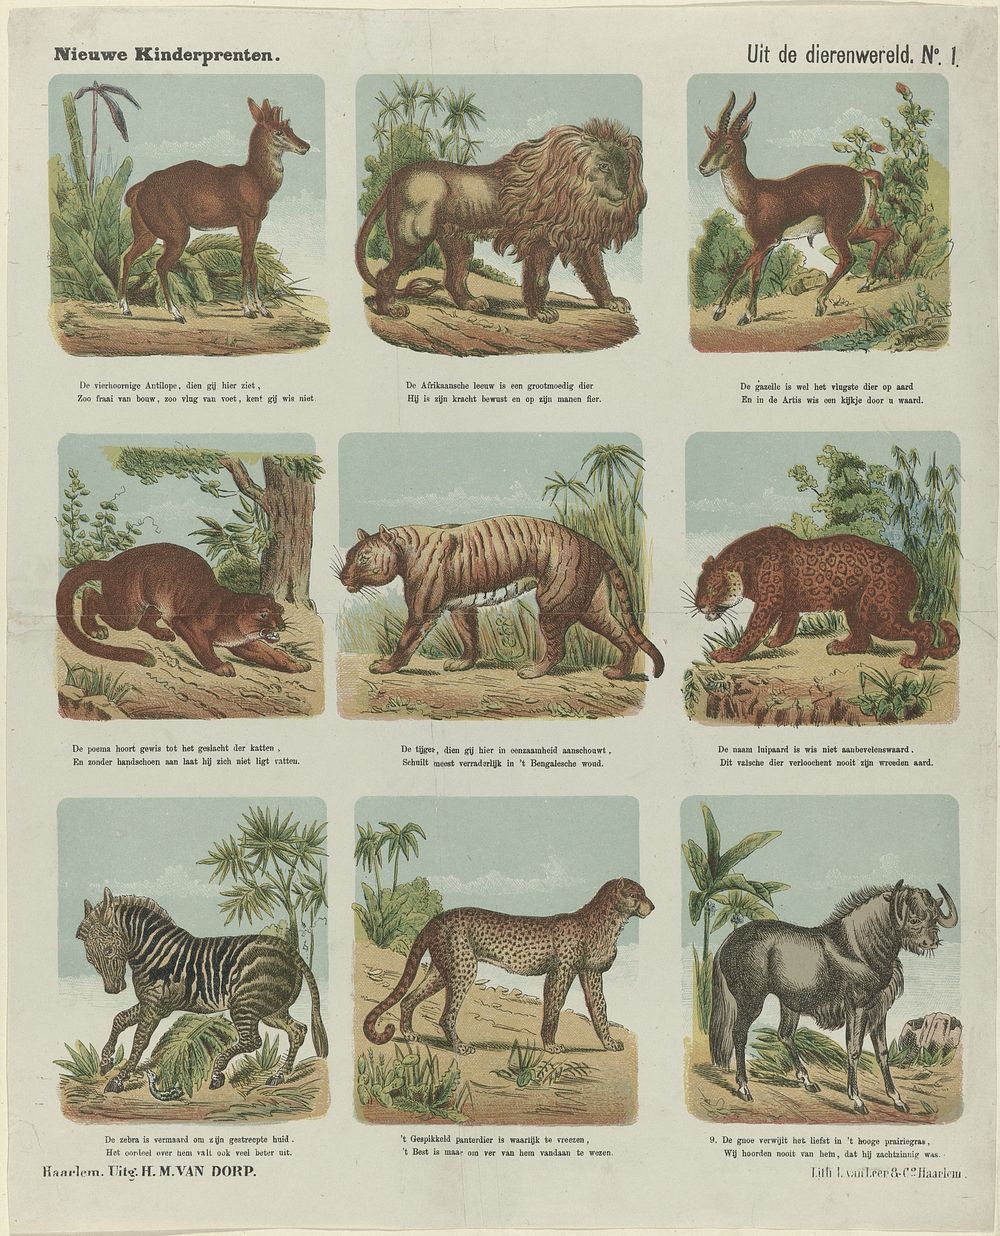 Uit de dierenwereld (1872 - 1883) by H M van Dorp, L van Leer and Co and anonymous